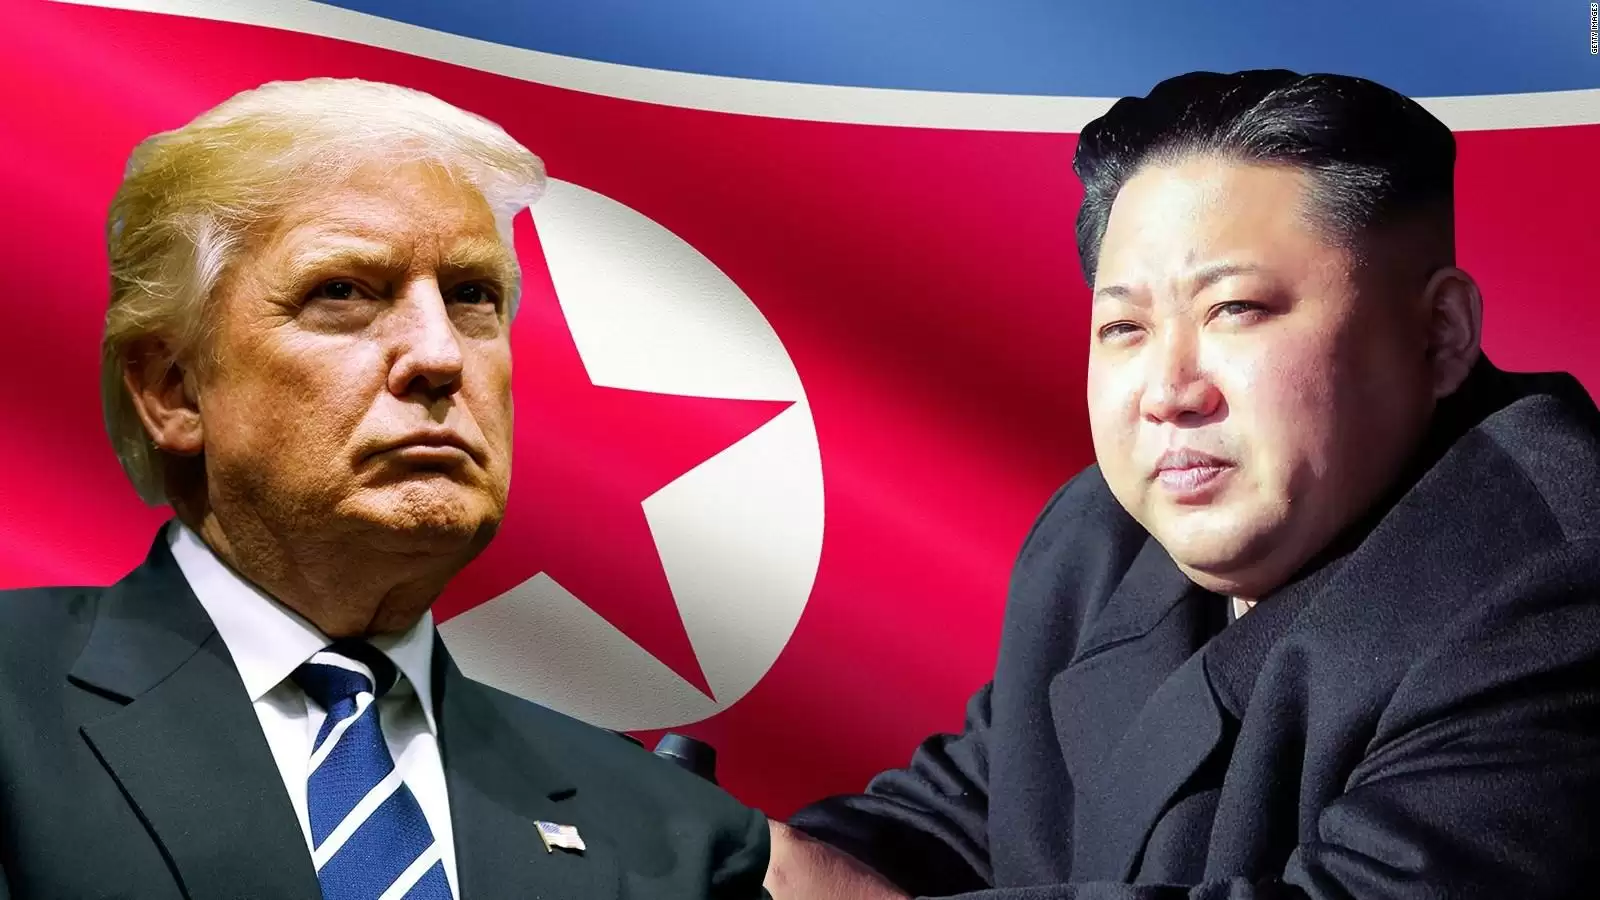 तीन देश मिलकर करने जा रहे है उत्तर कोरिया पर हमला अब नहीं बचेगा कोरिया